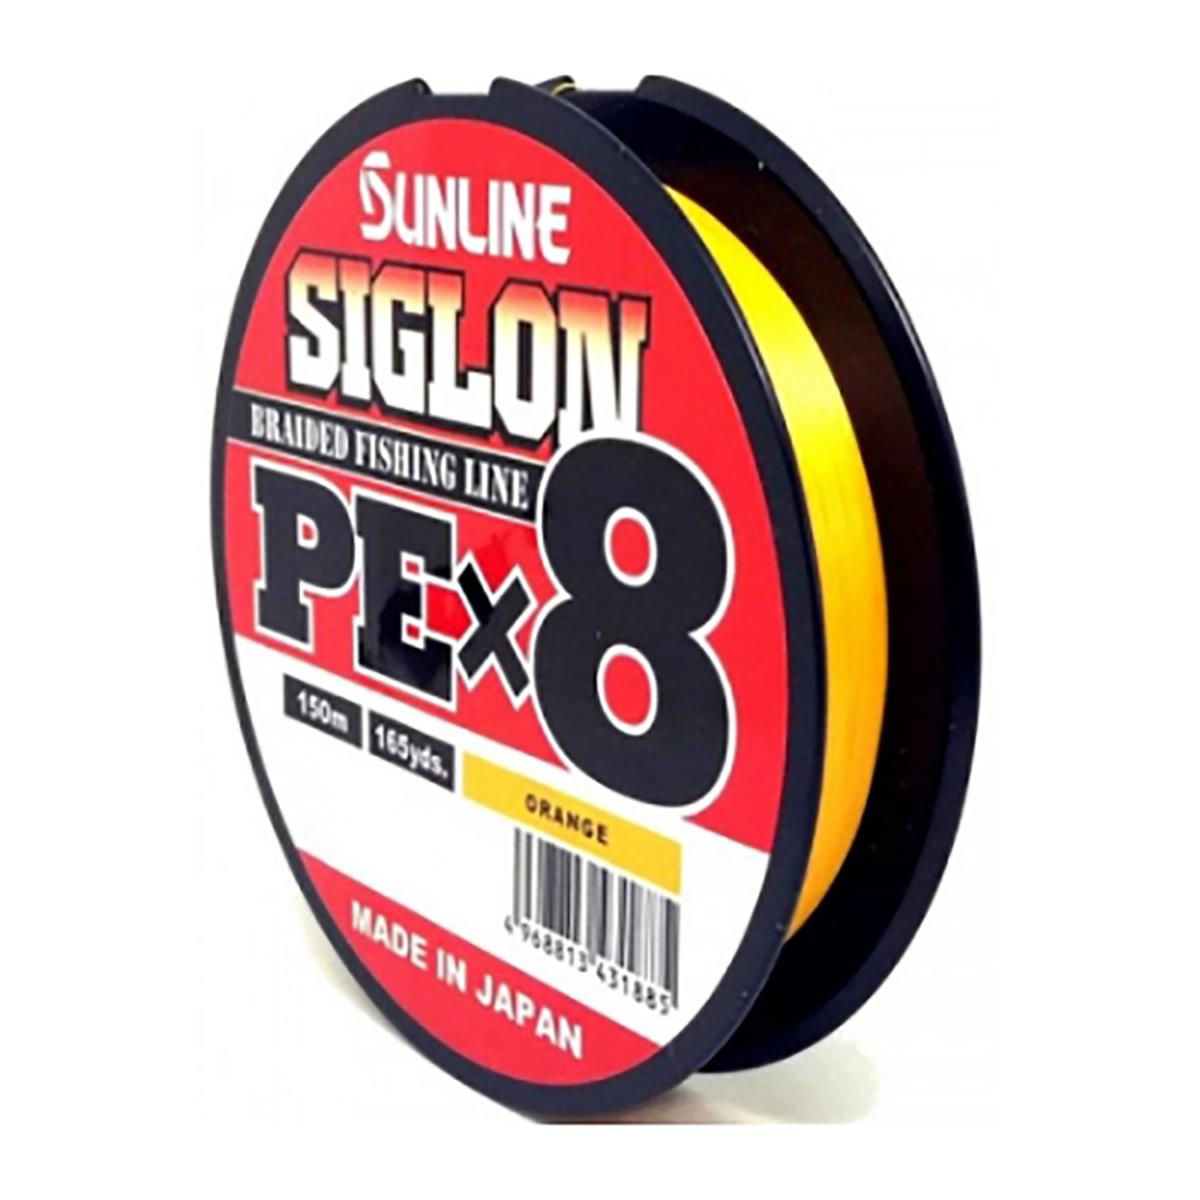 Шнур SIGLON PE×8 150M (Orange) #0.8/12LB Sunline шнур для вязания